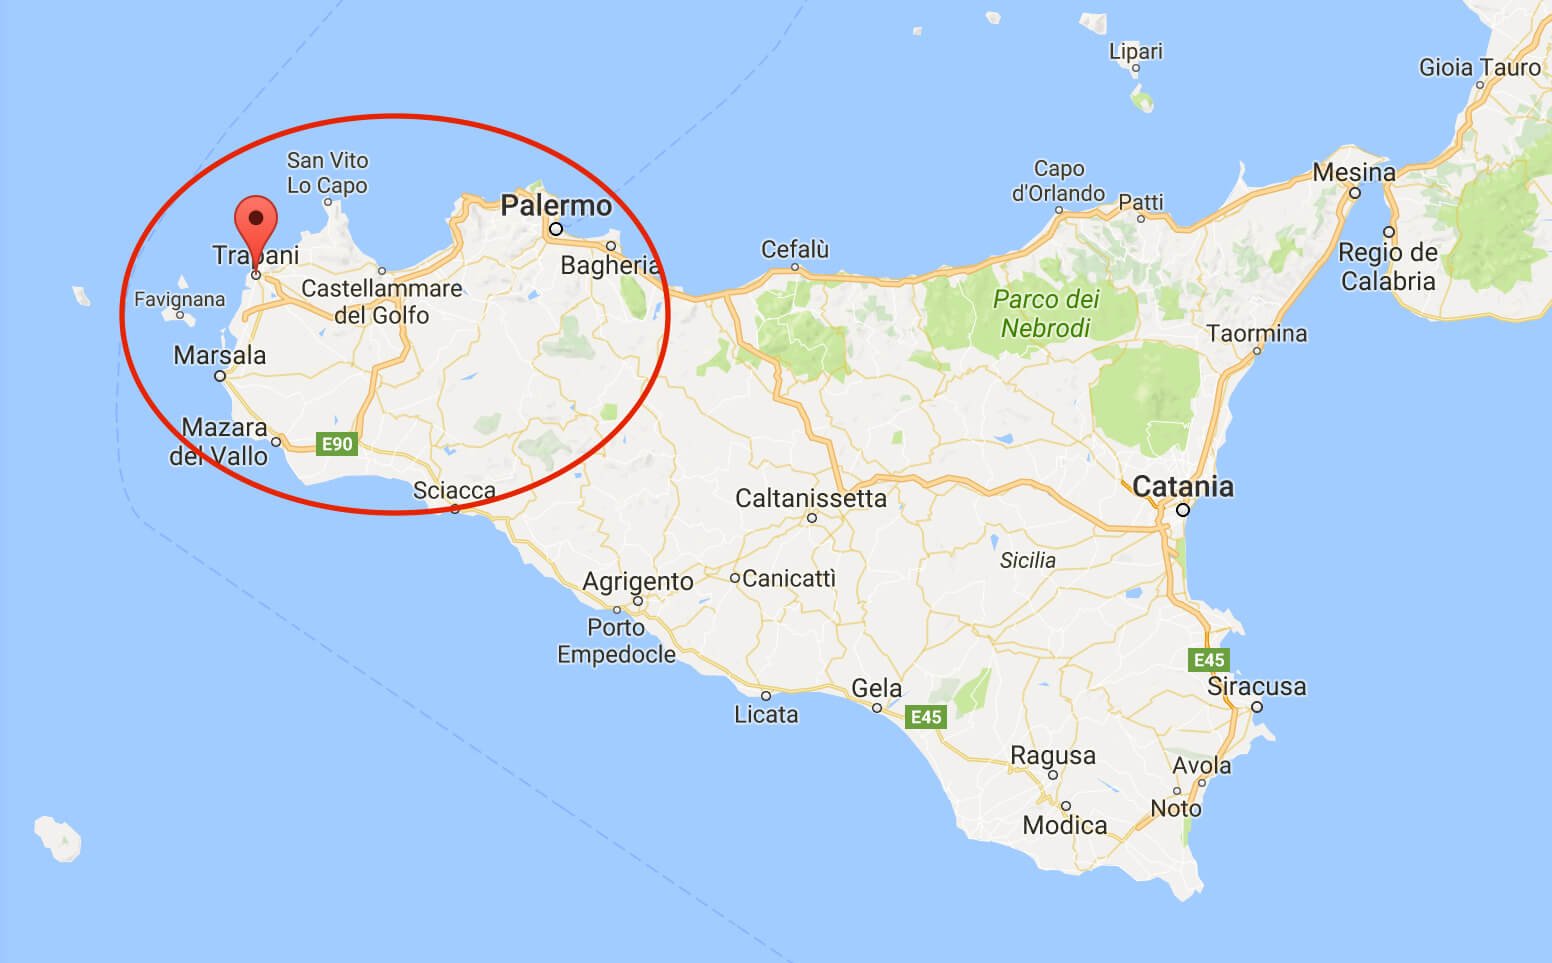 Mapa de Sicilia, región noroeste